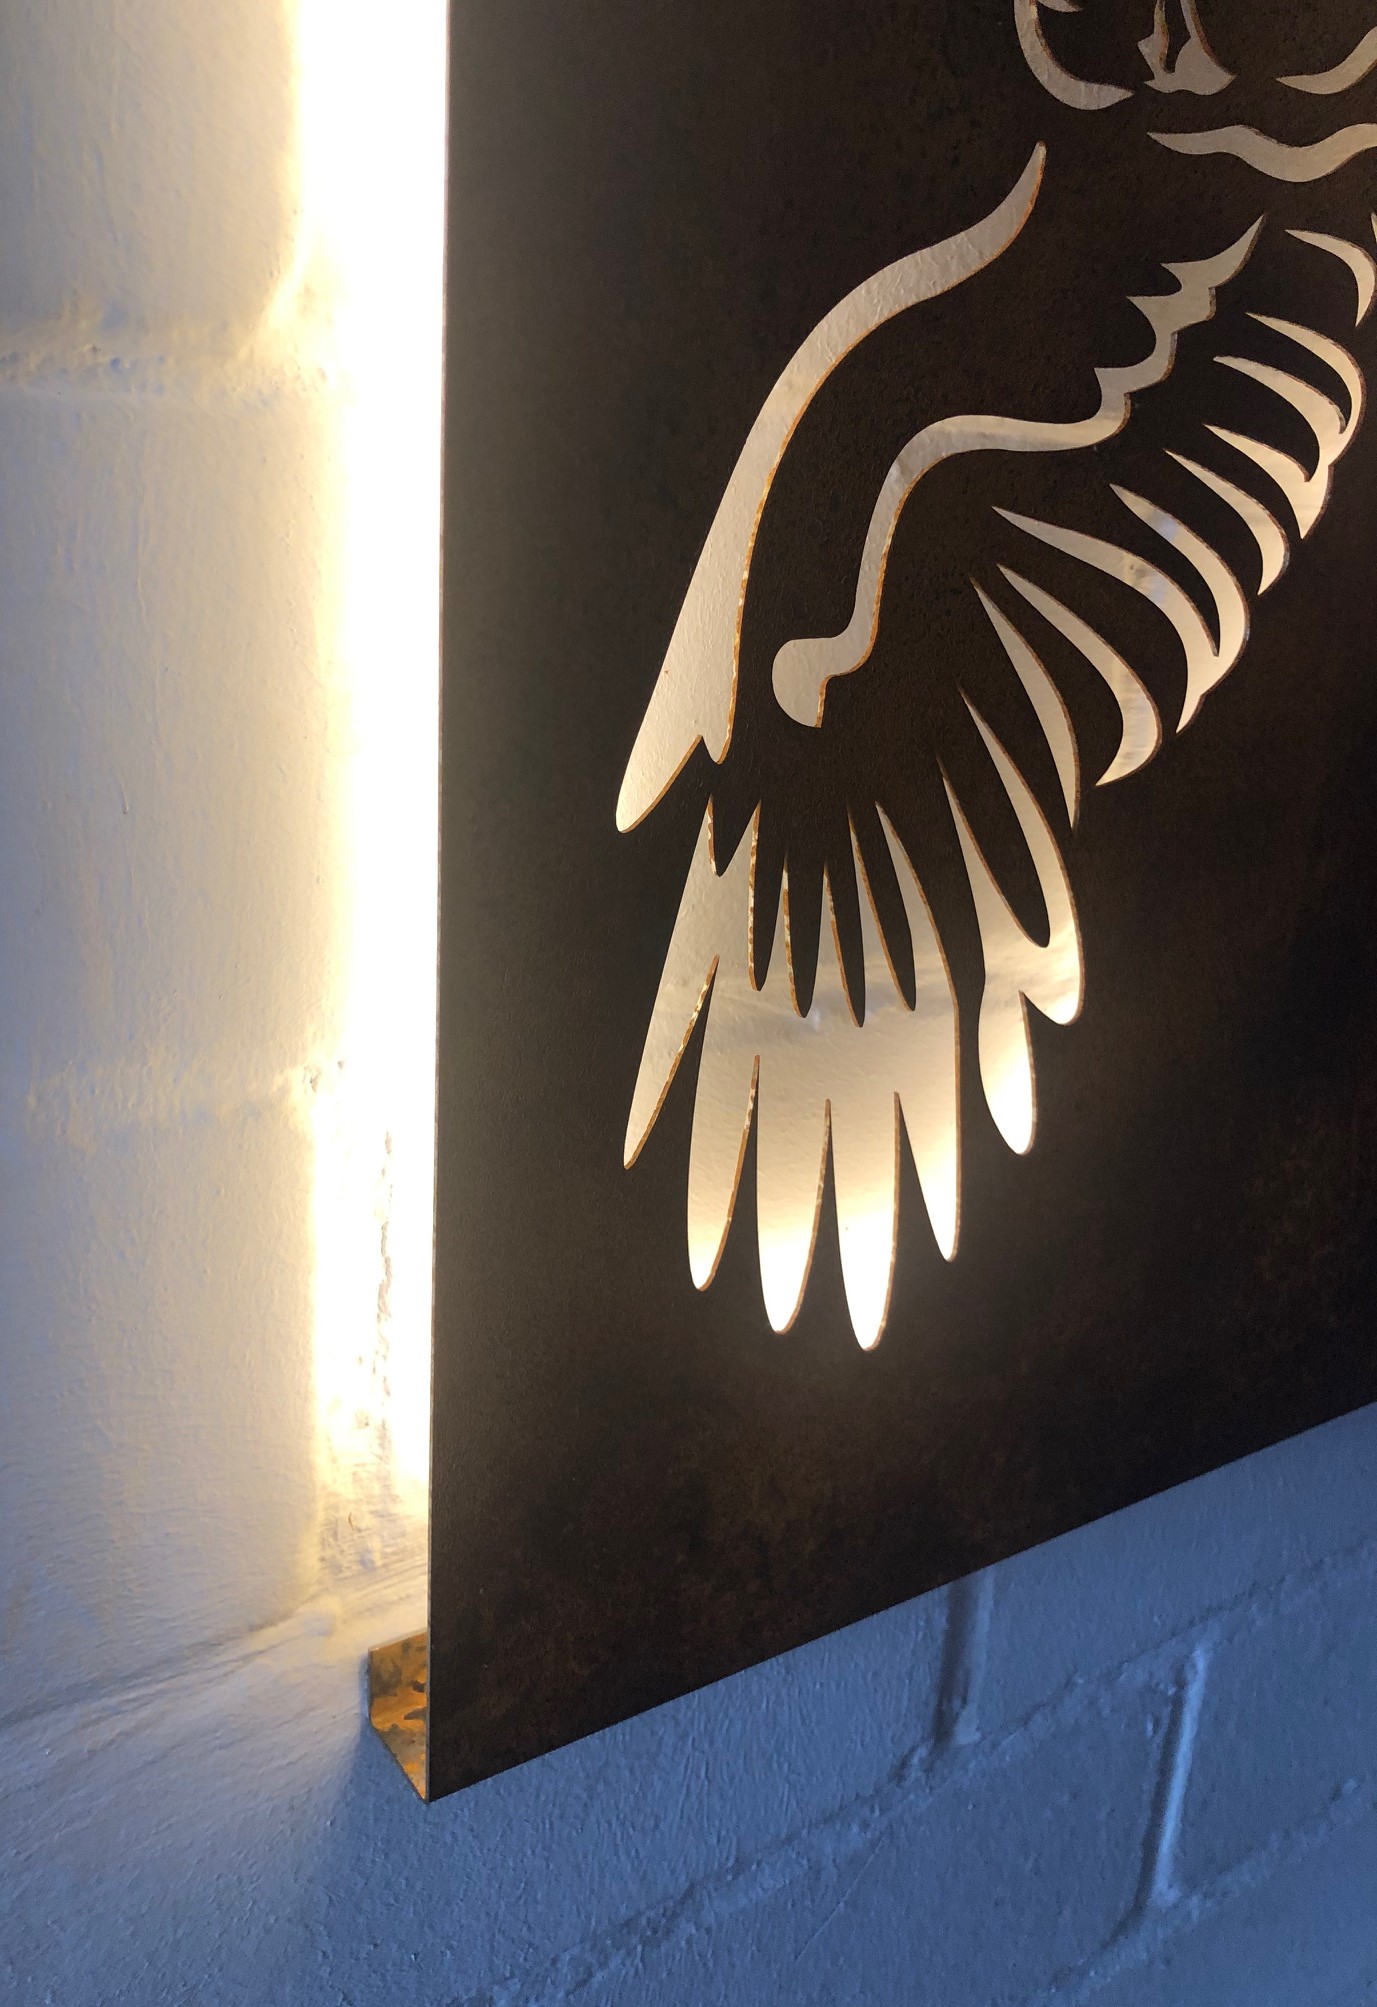 Wandbild (Lampe) Motiv Adler (ohne Beleuchtung) Wandbild 1000x600 mm Edelstahl (rostet nicht)